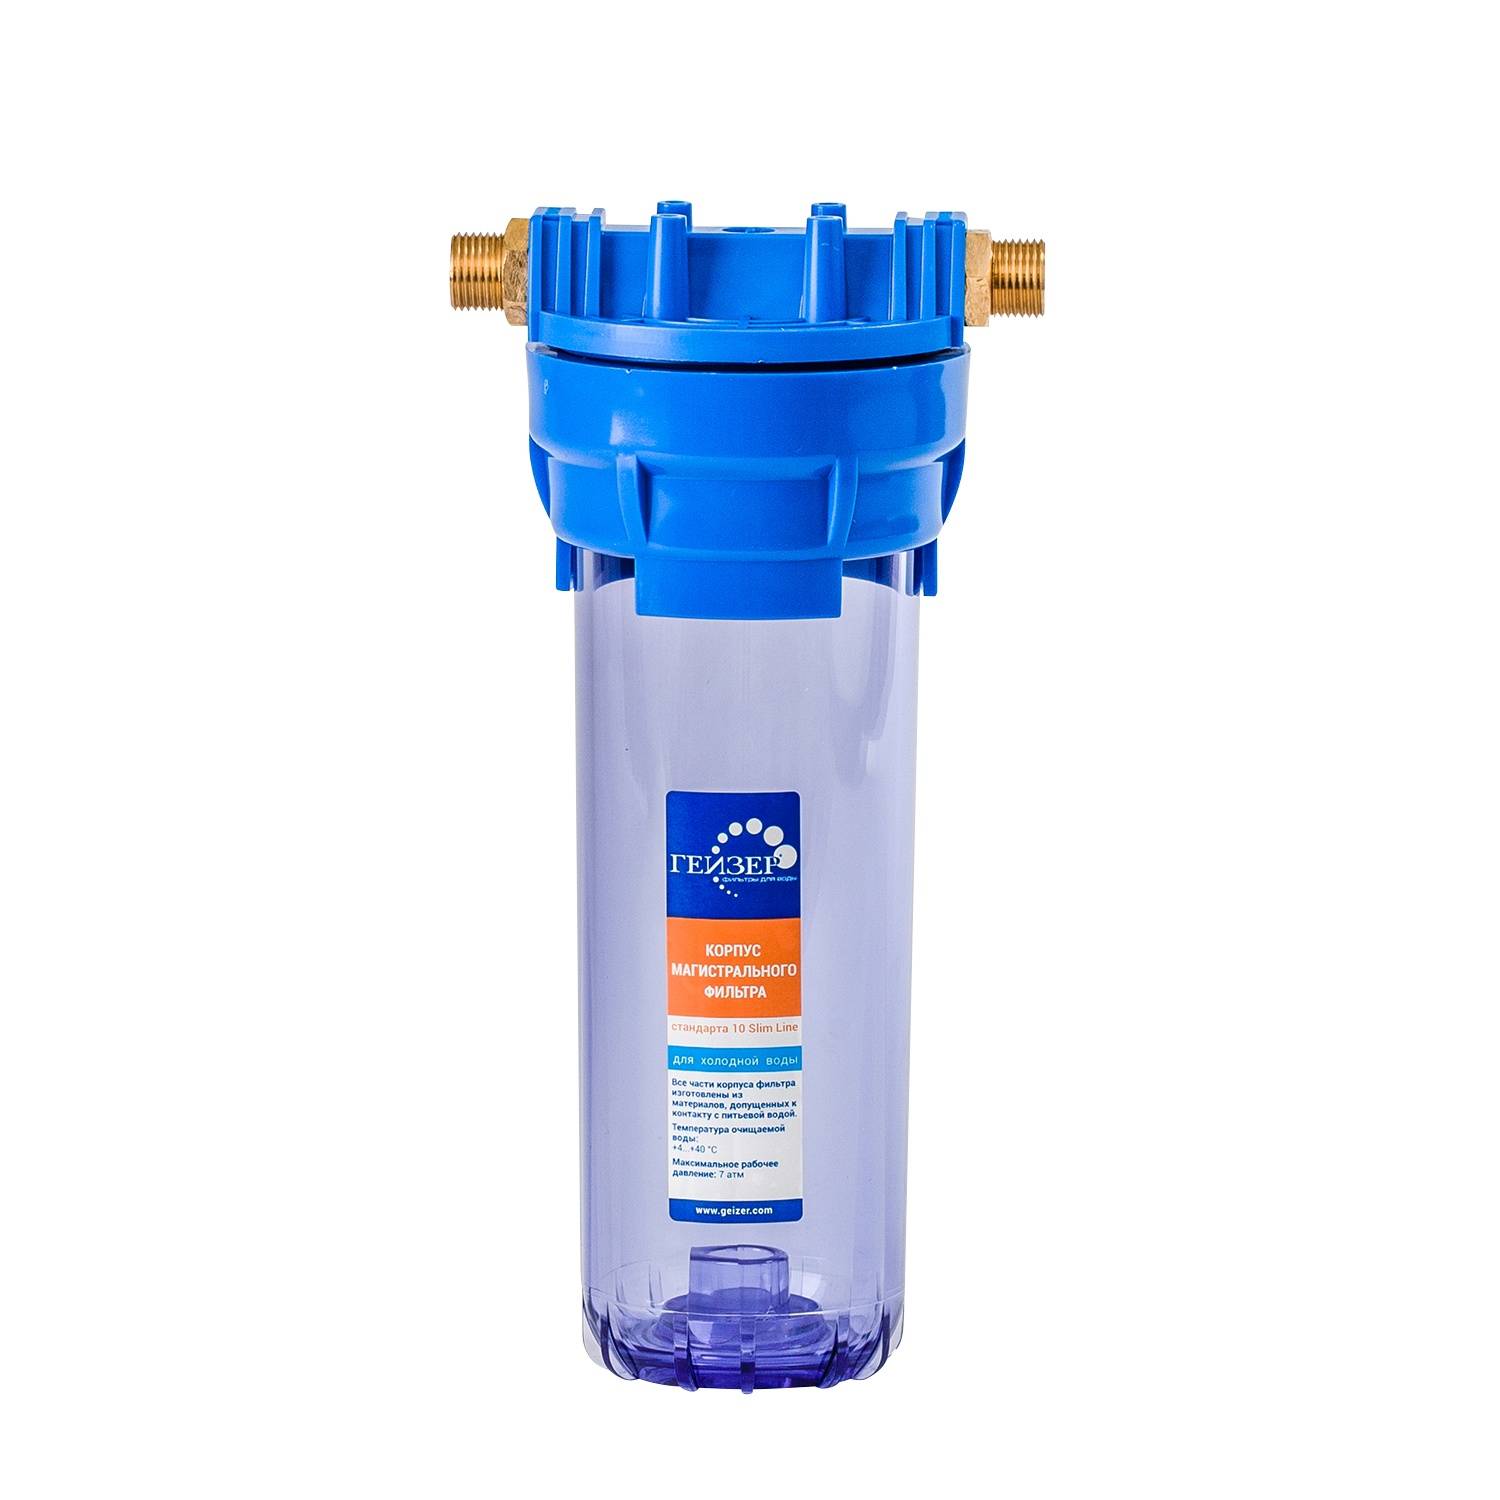 Магистральный фильтр для очистки воды — какой лучше? | блог компании titanof